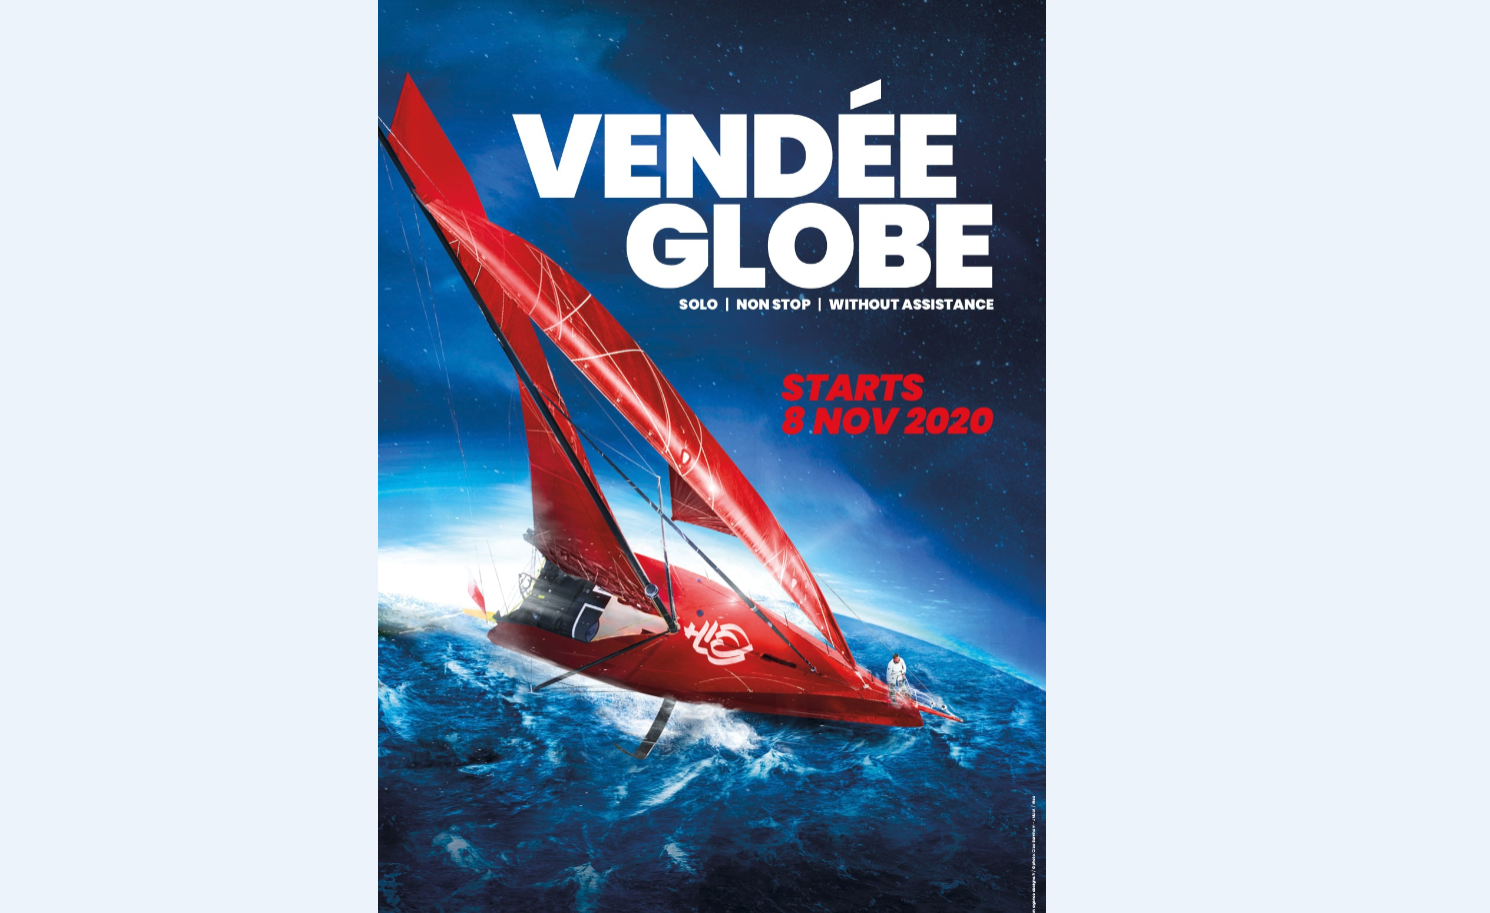 Vendée Globe remains on course, start on 8th Novembre 2020